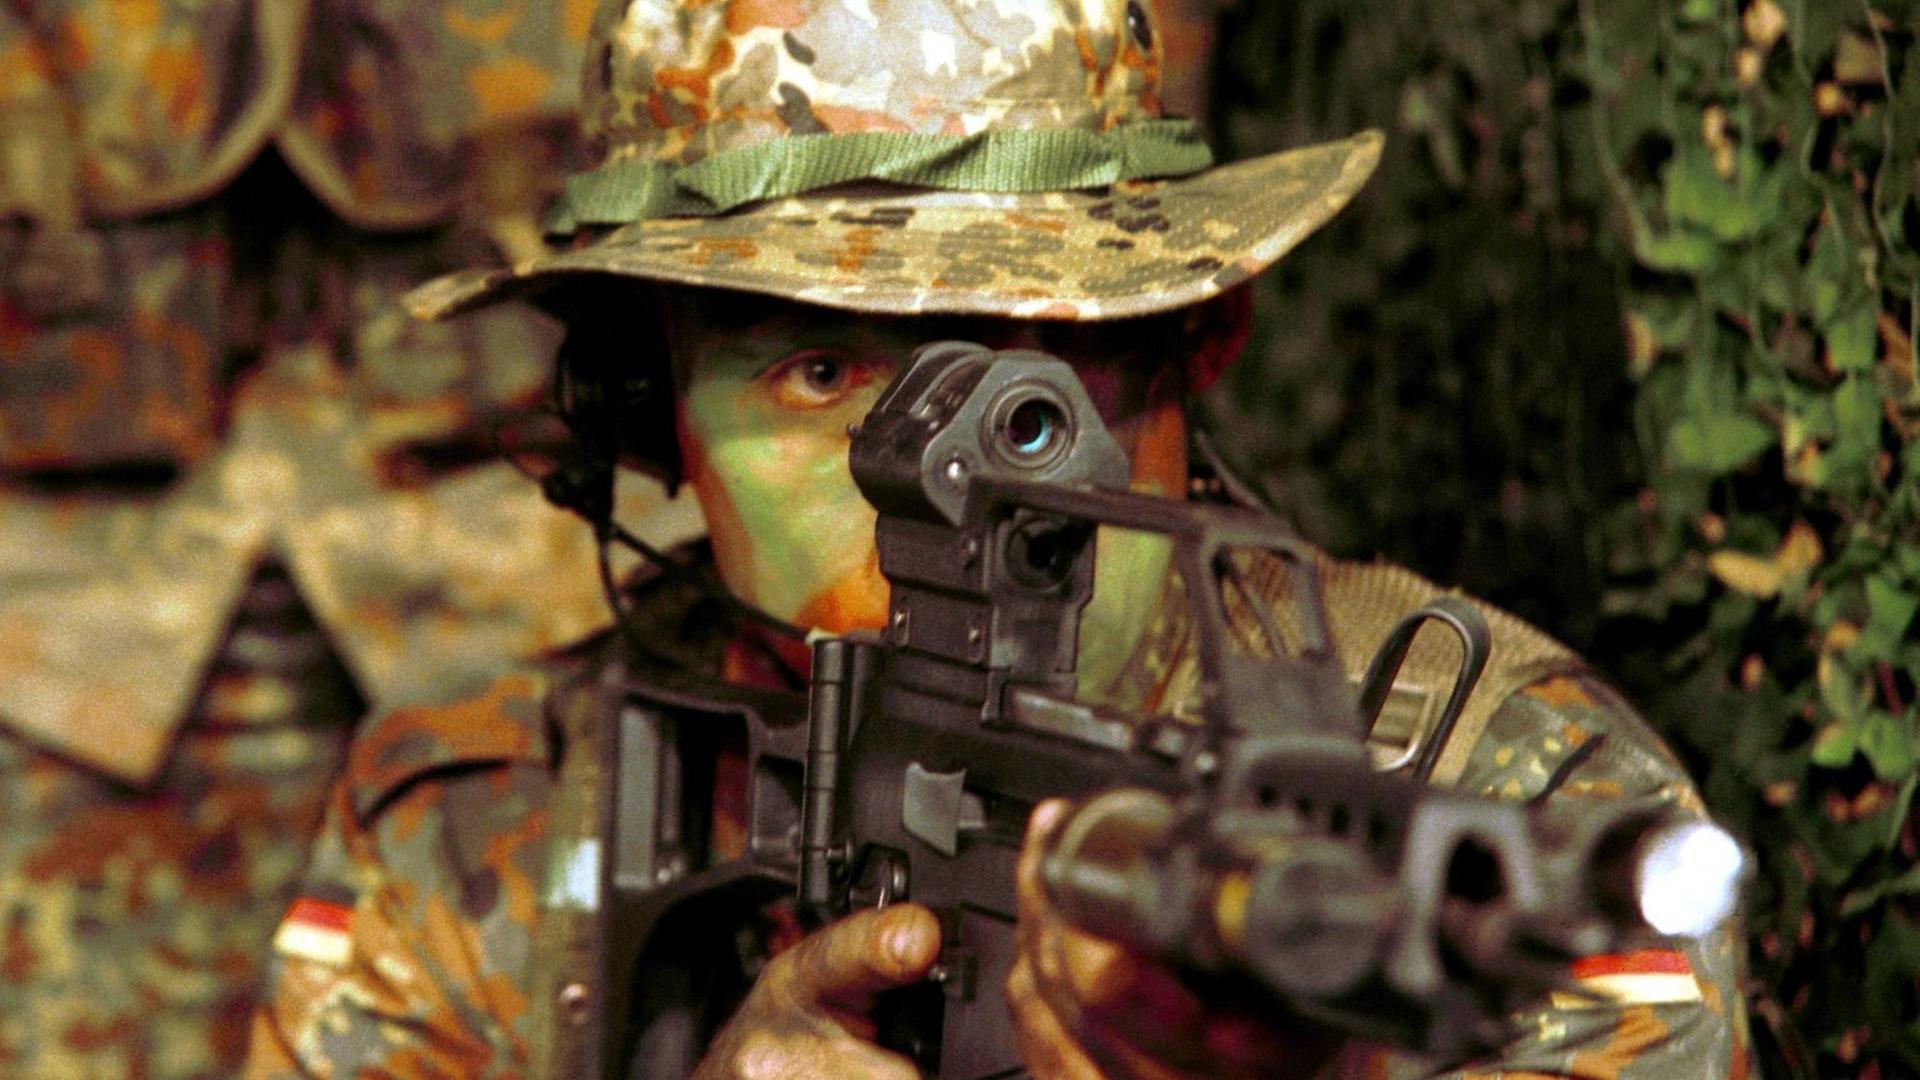 Ein Soldat der Kommando Spezialkräfte (KSK) mit einem G36-Gewehr am 12.9.2001 auf dem Schießstand in der Kaserne Calw (Foto der Bundeswehr. Achtung Redaktionen: Nutzung für Werbung nicht gestattet).